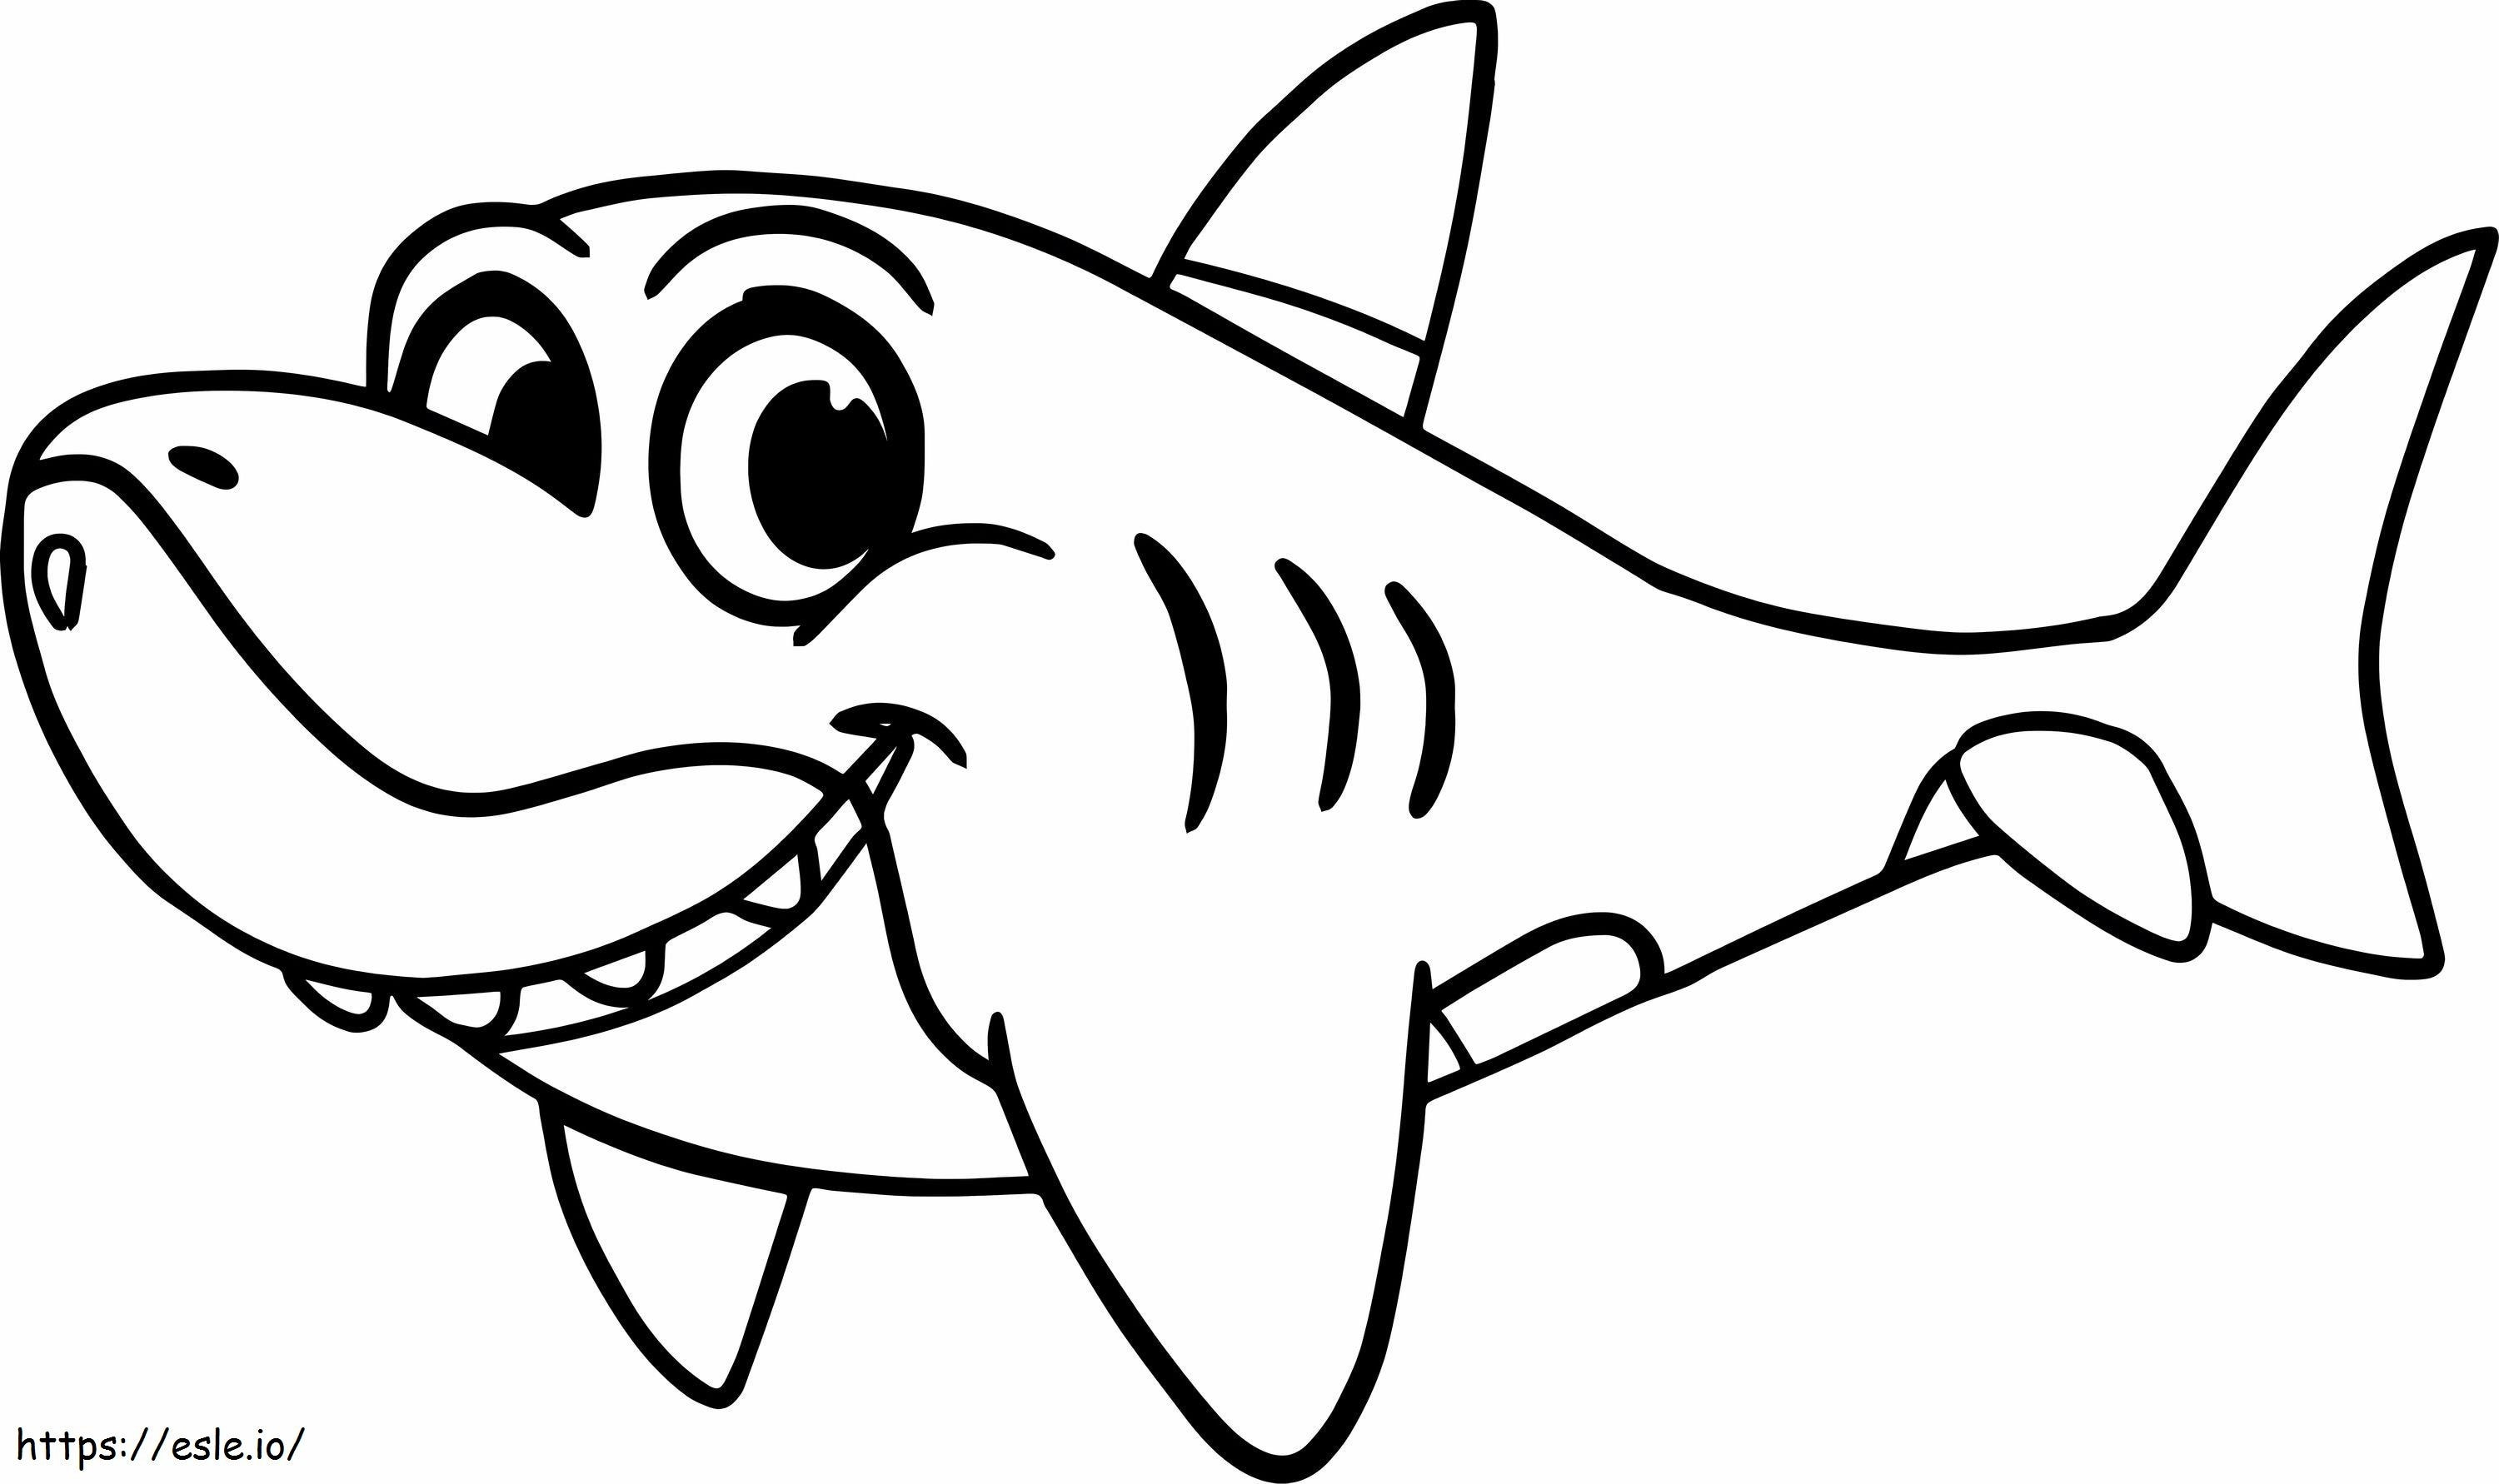 Happy Tiburon coloring page